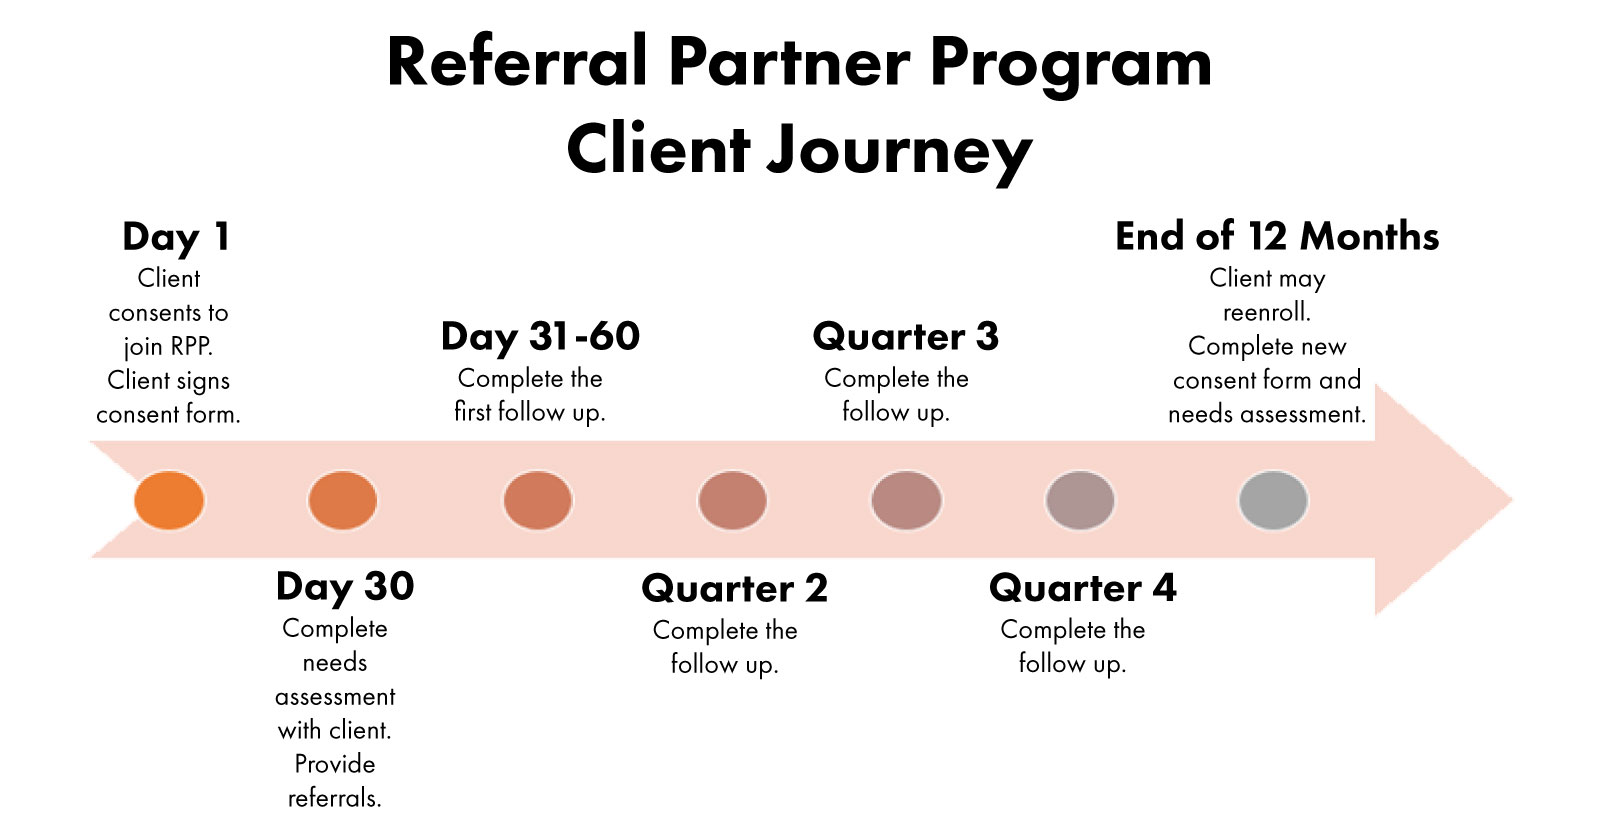 Referral Partner Program Client Journey